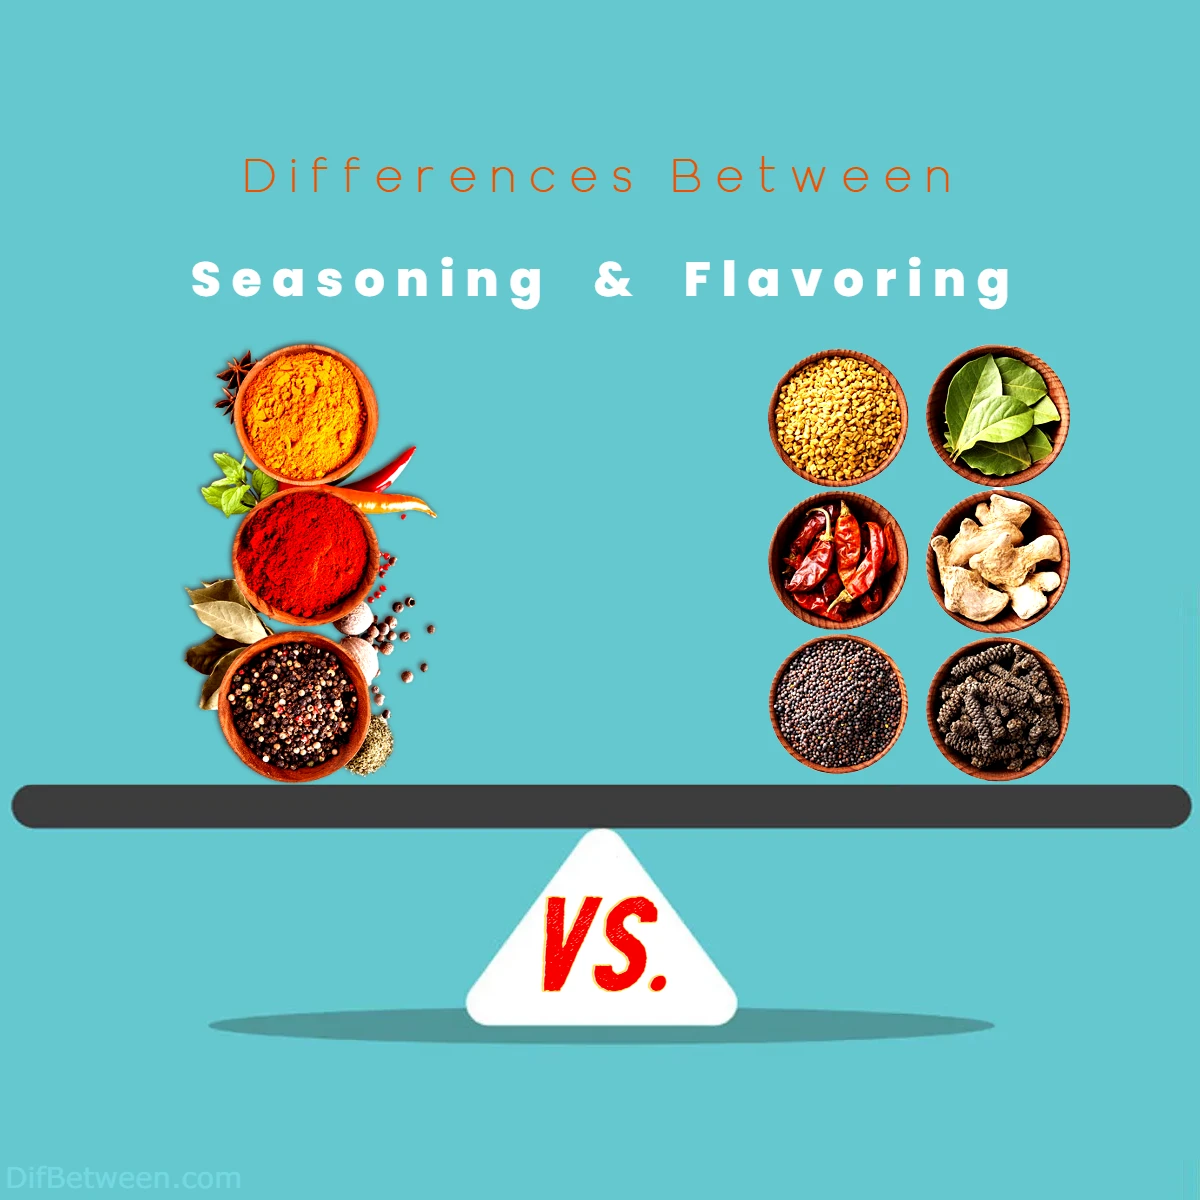 Differences Between Seasoning vs Flavoring